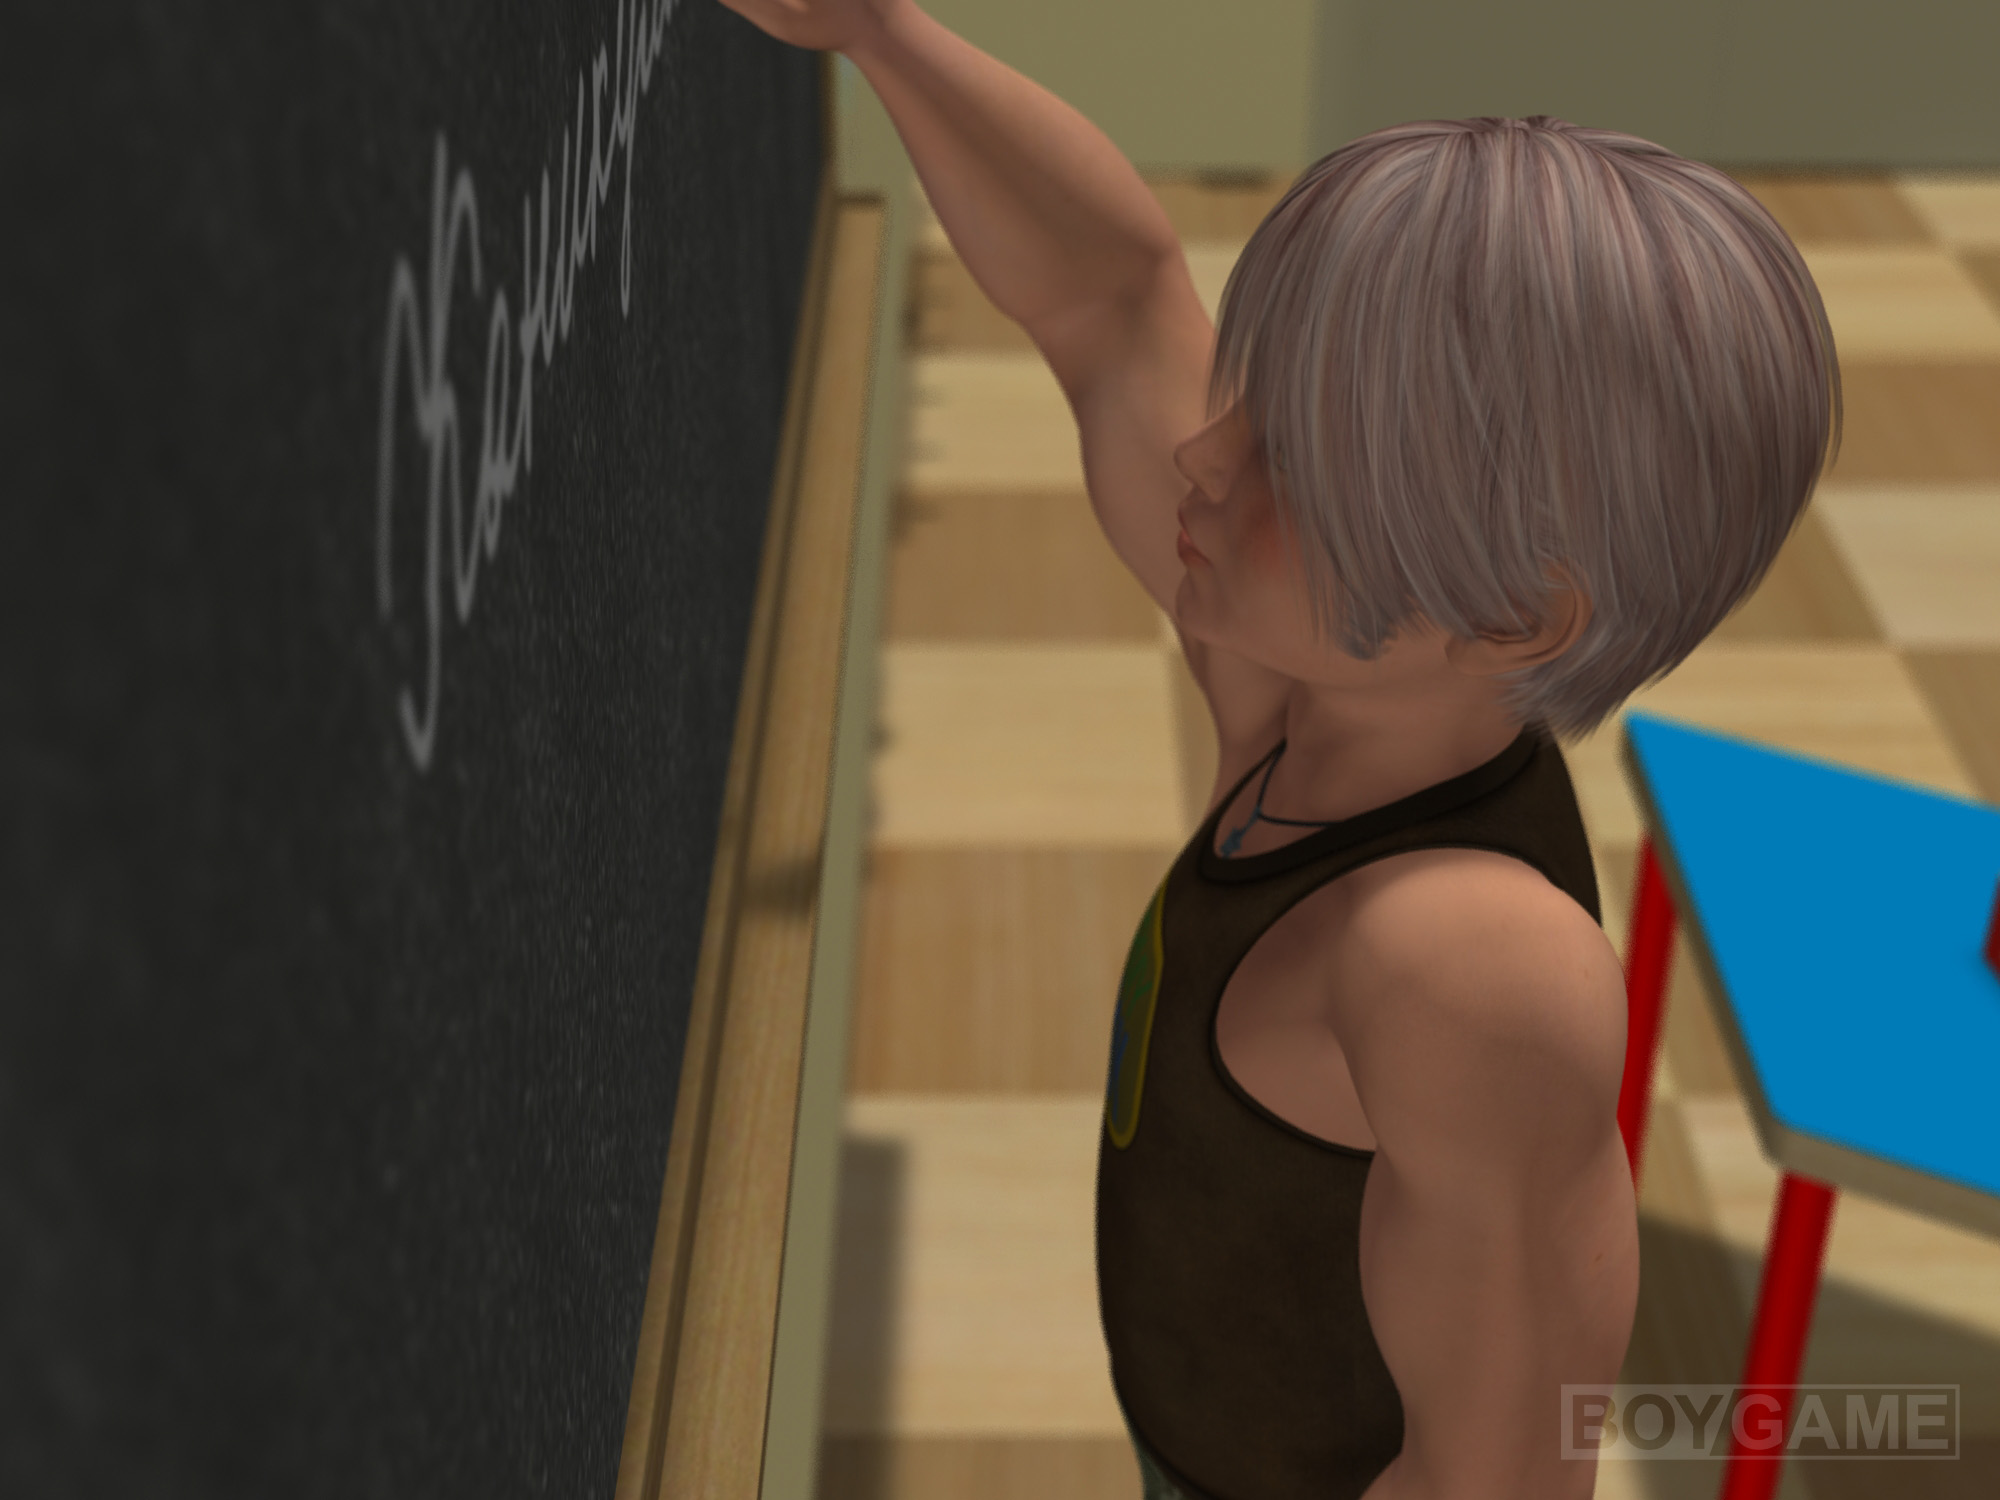 BoyGame shotacon 3D Vice Teacher